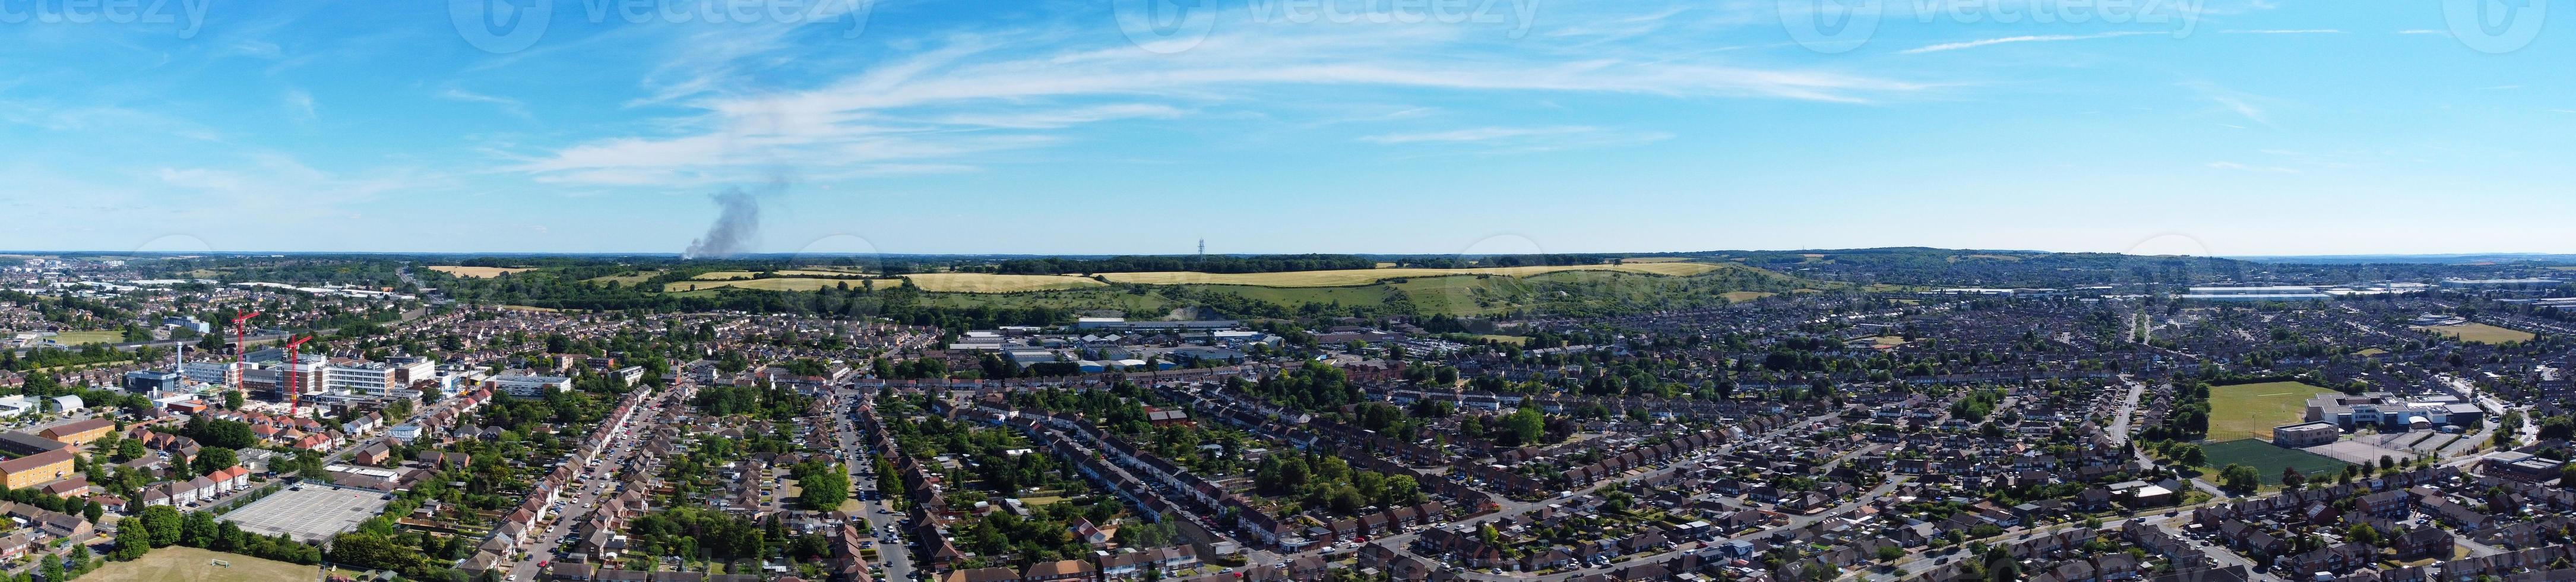 material de archivo de alto ángulo y paisaje aéreo panorámico vista del paisaje urbano de inglaterra gran bretaña foto